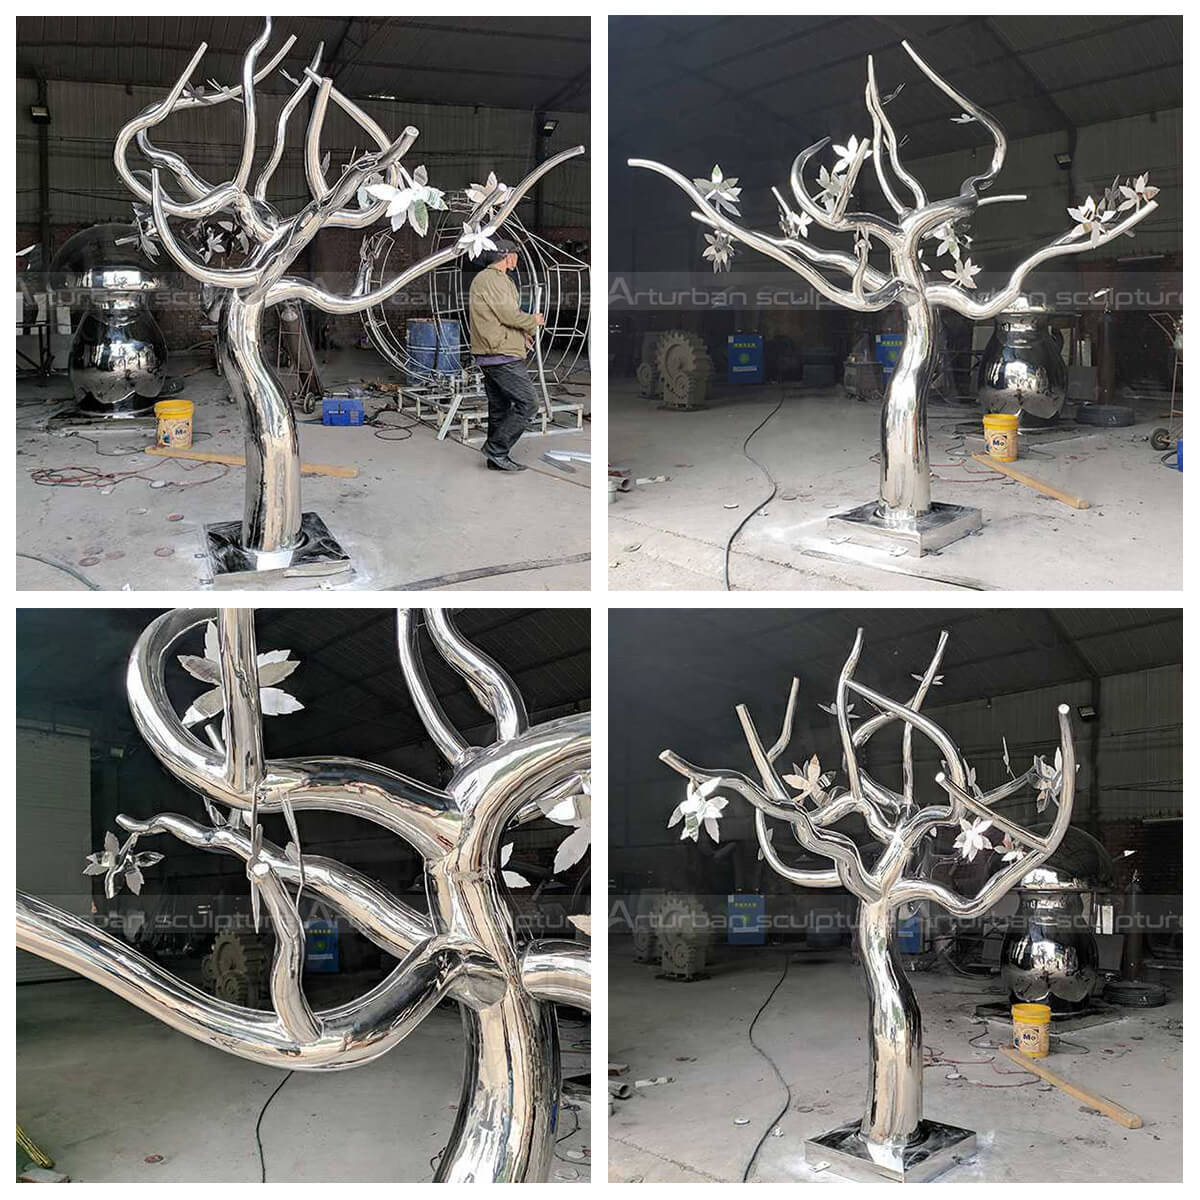 Steel Tree Sculpture